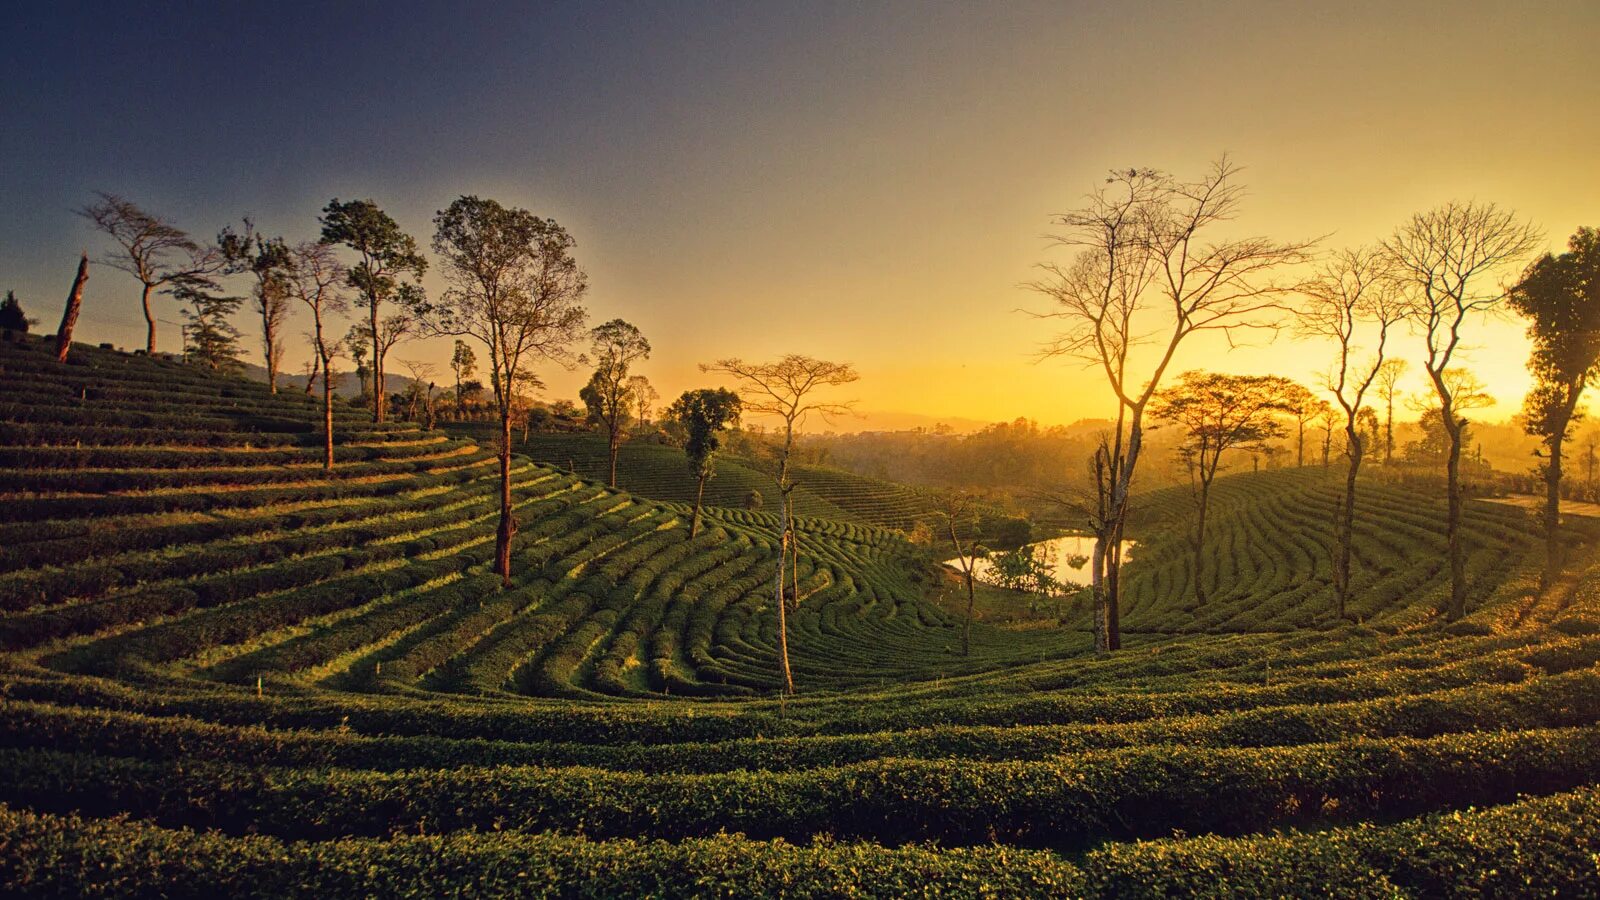 Шри ланка специализация. Шри Ланка чайные плантации. Цейлонские плантации Шри Ланка. Чайные плантации Шри Ланки. Шри Ланка плантации чая.